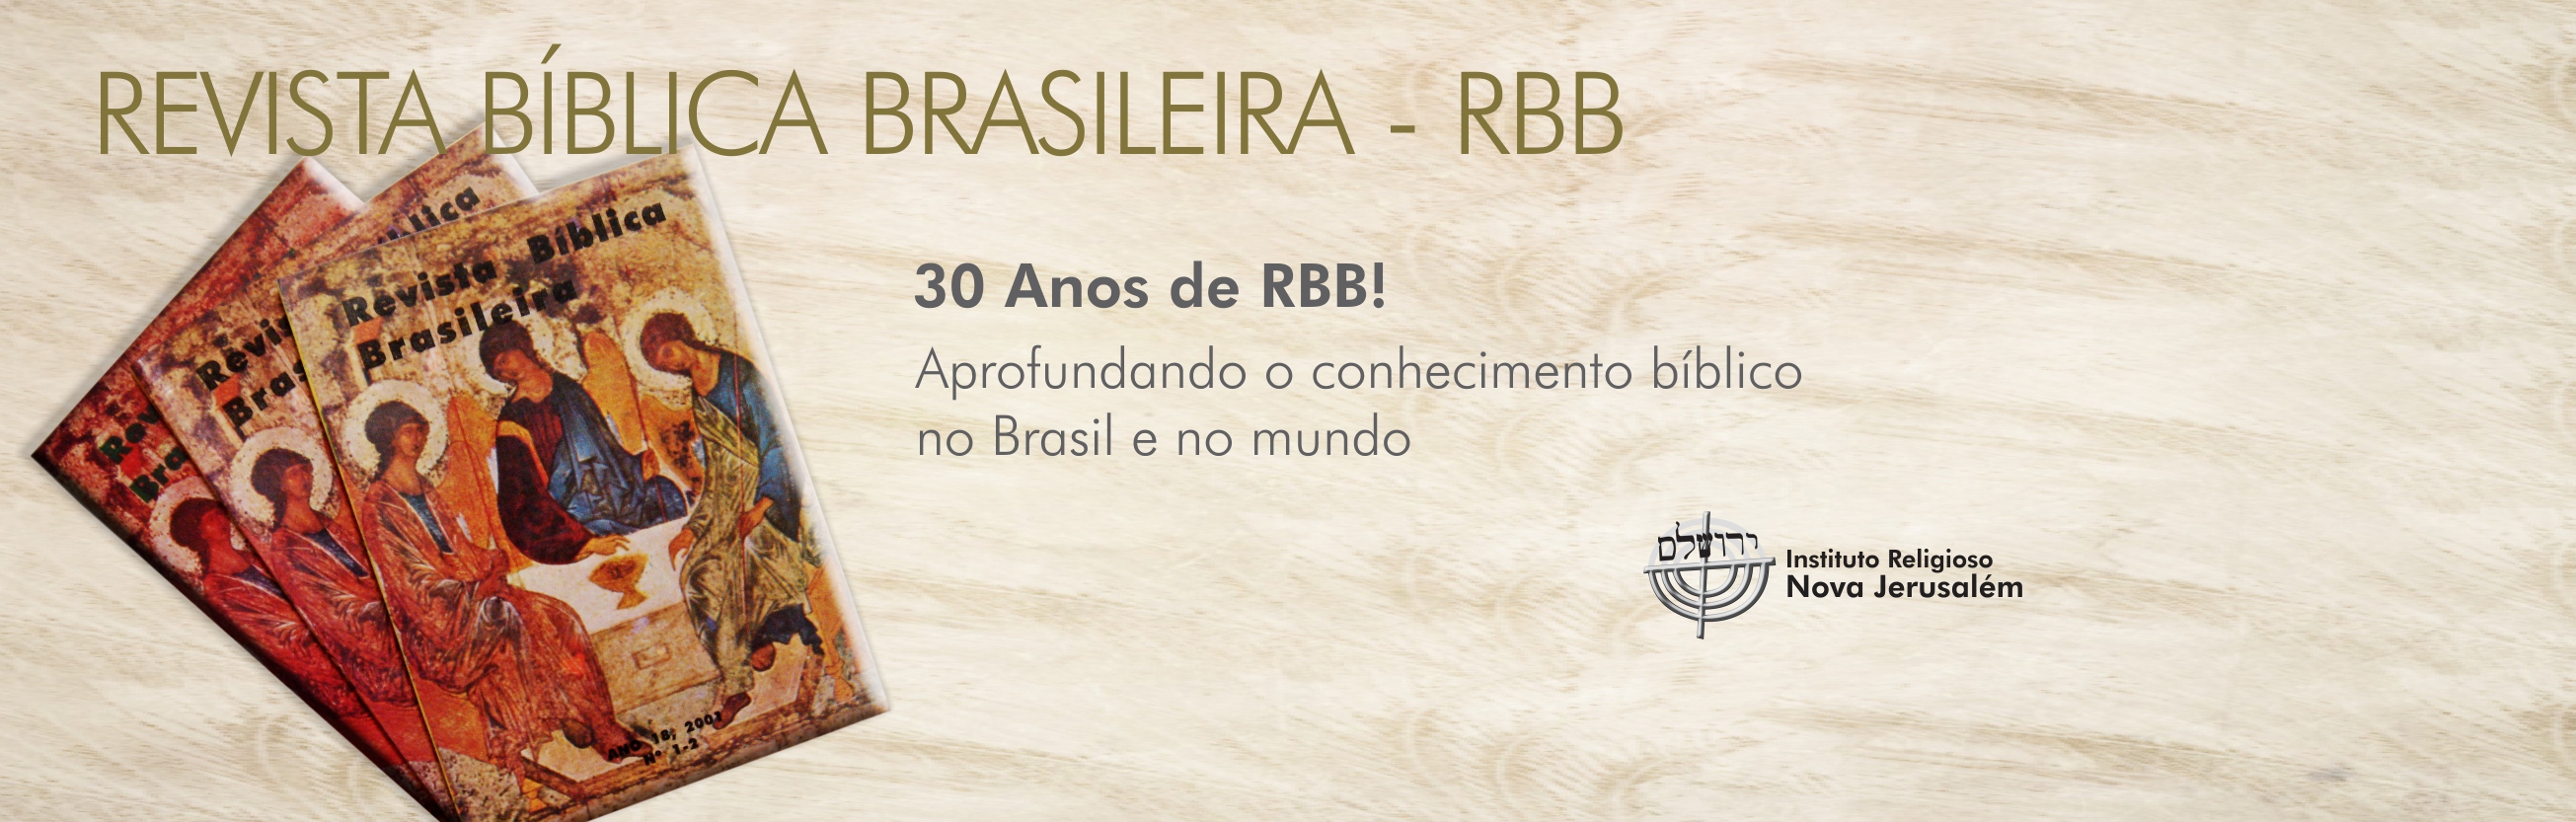 Revista Bíblica Brasileira – RBB